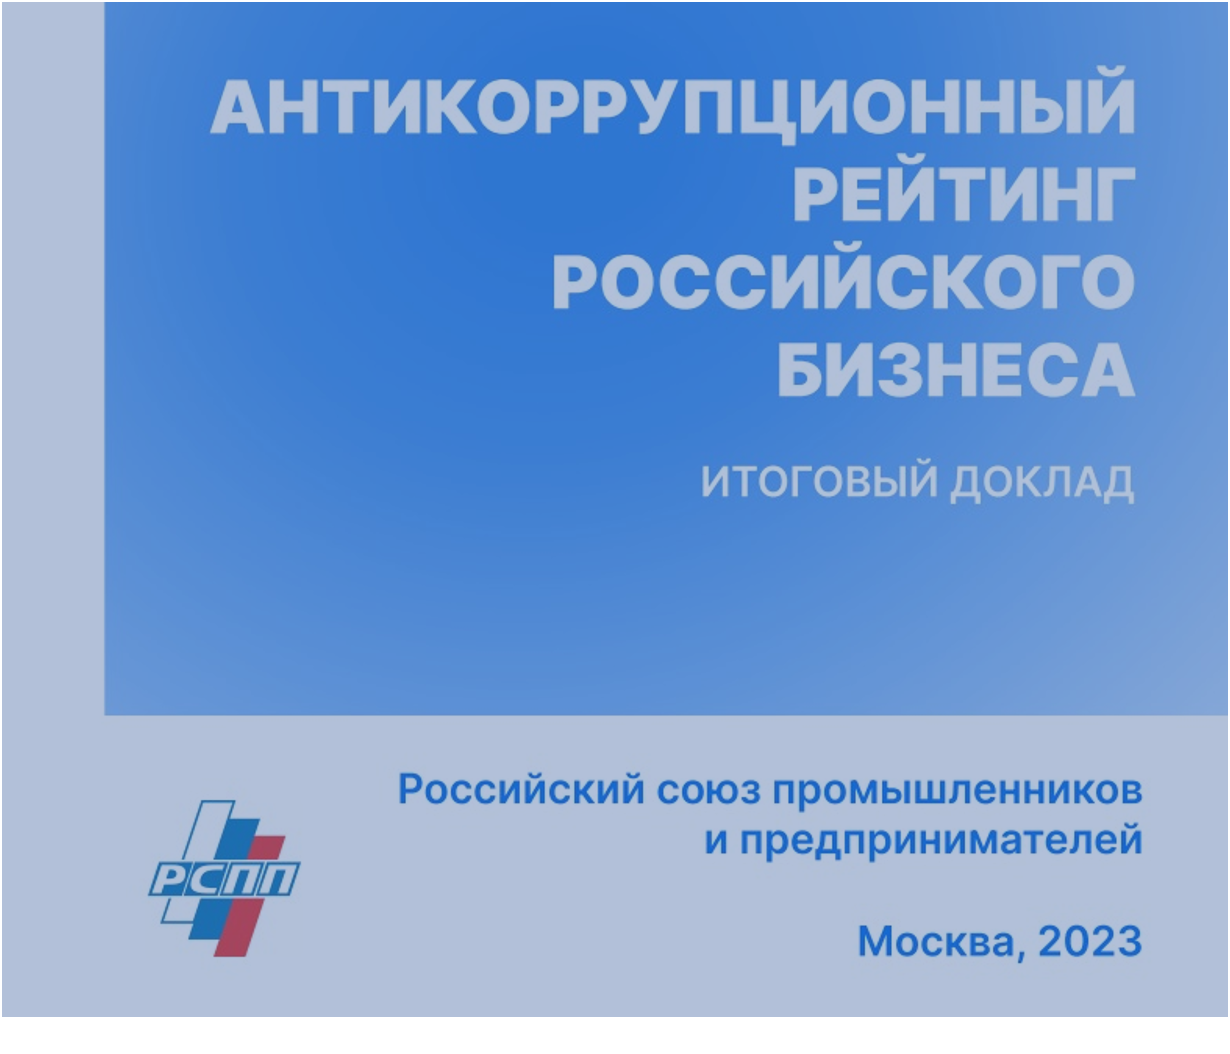 Антикоррупционный рейтинг российского бизнеса — 2023: подтверждена эффективность политики АО «ОЗК» в сфере противодействия коррупции